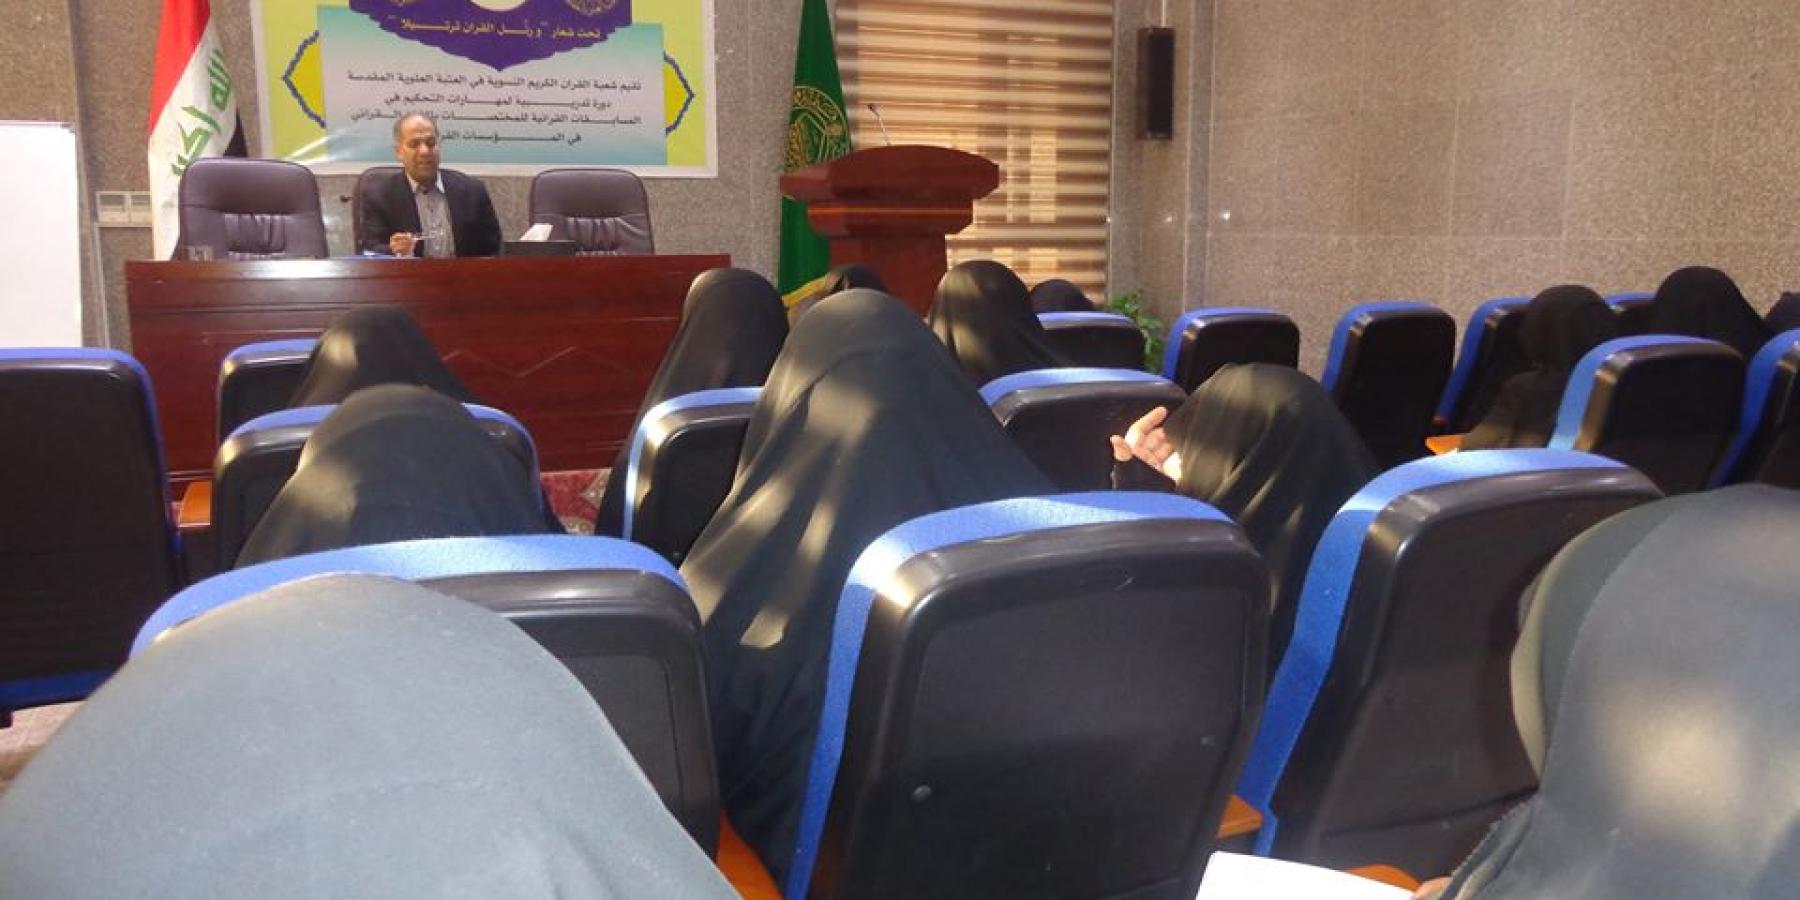 شعبة القرآن الكريم النسوية تقيم دورة قرآنية في مهارات التحكيم